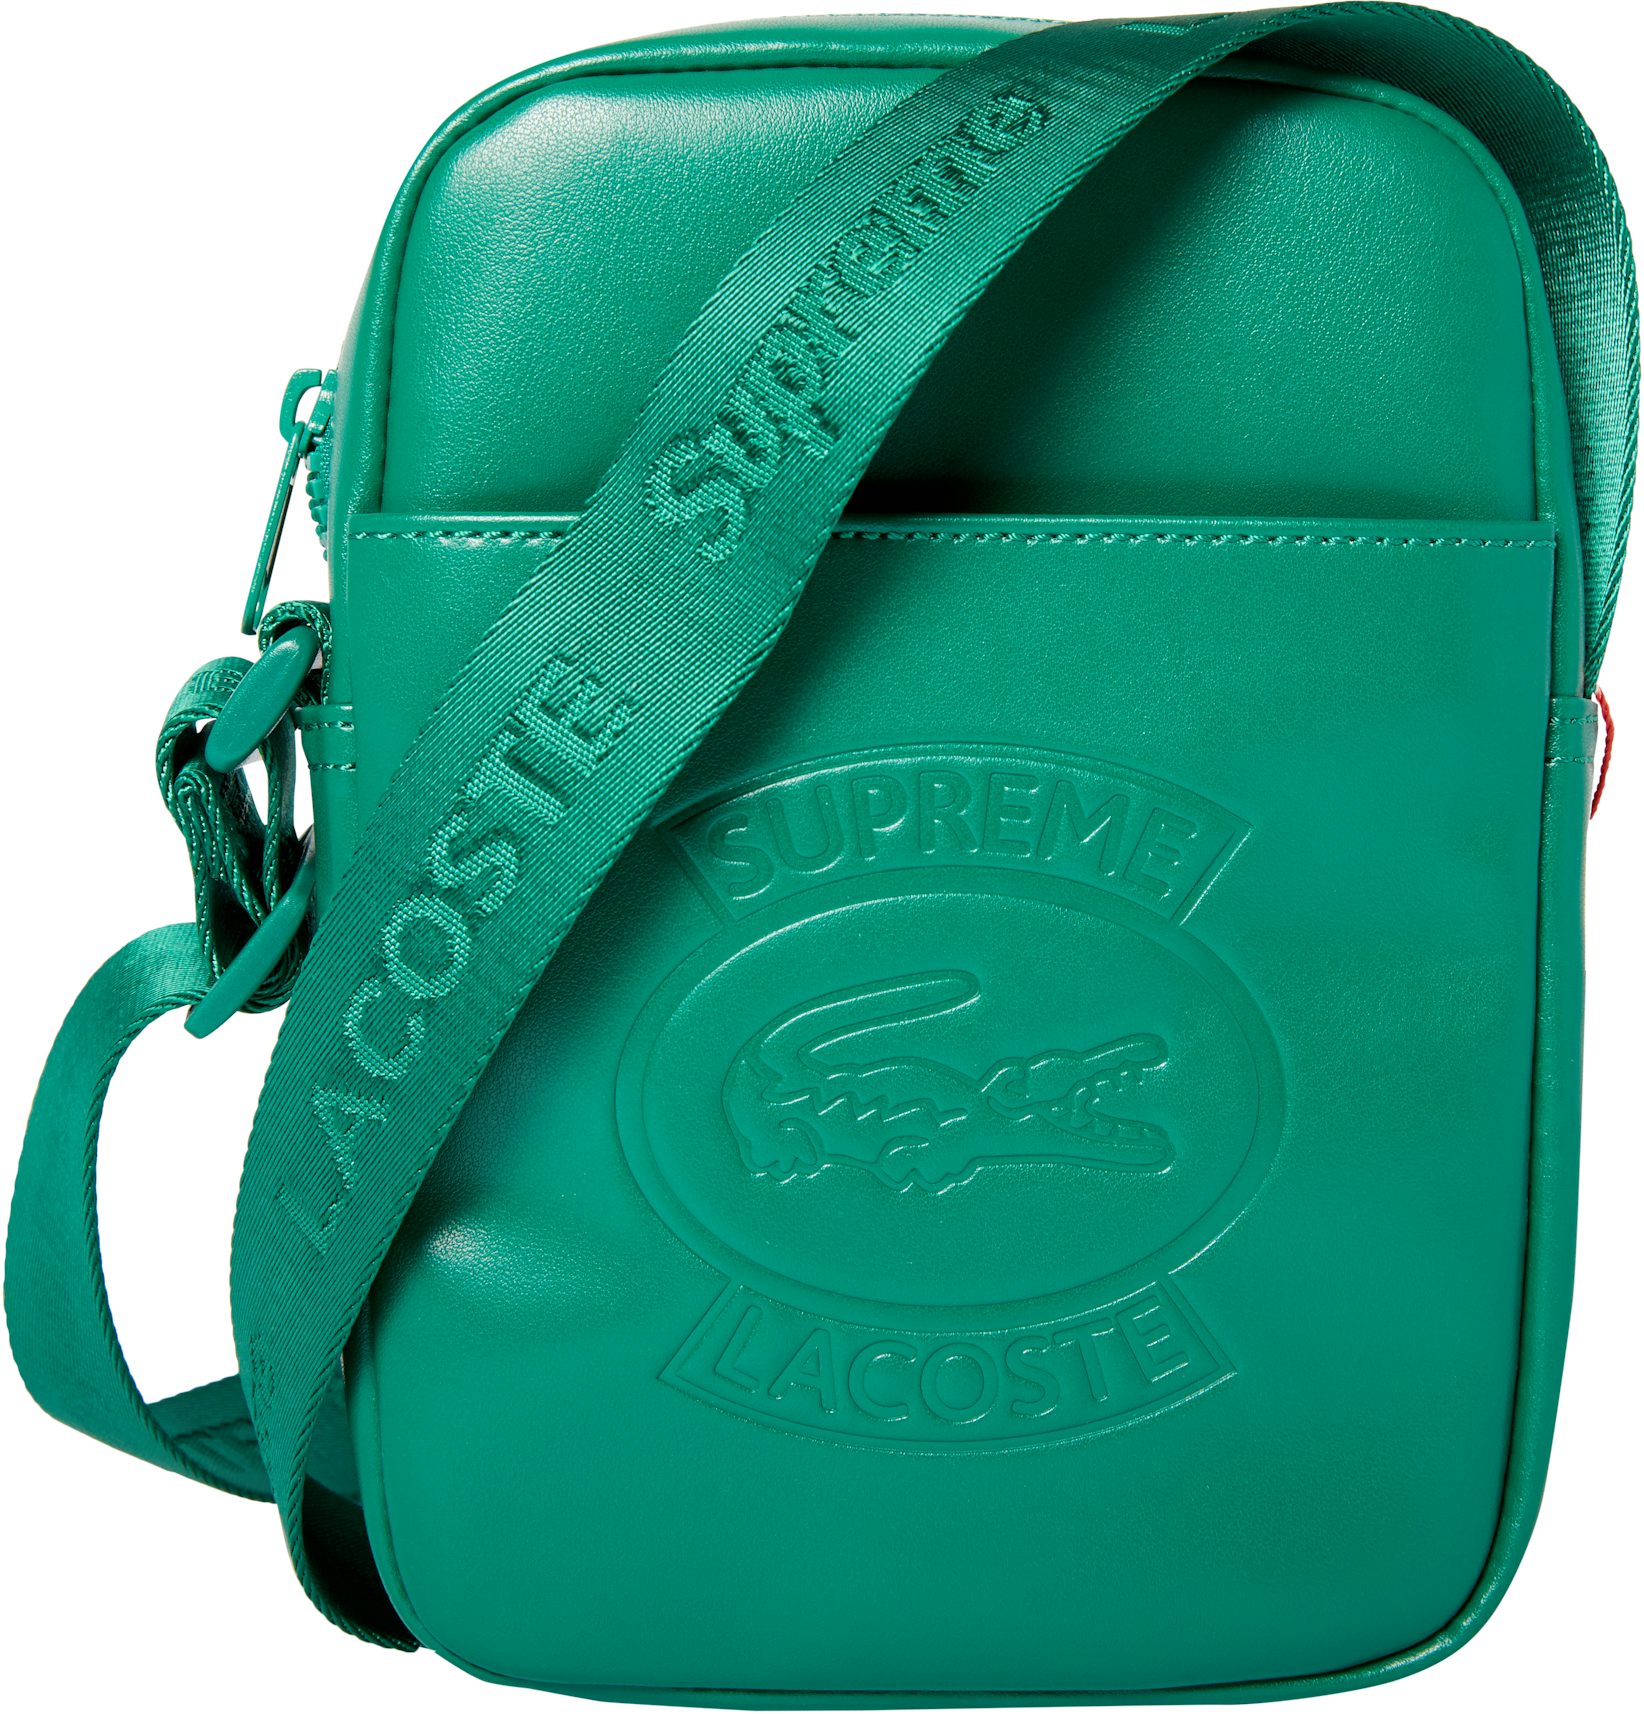 Supreme LACOSTE Shoulder Bag Green - SS18 -